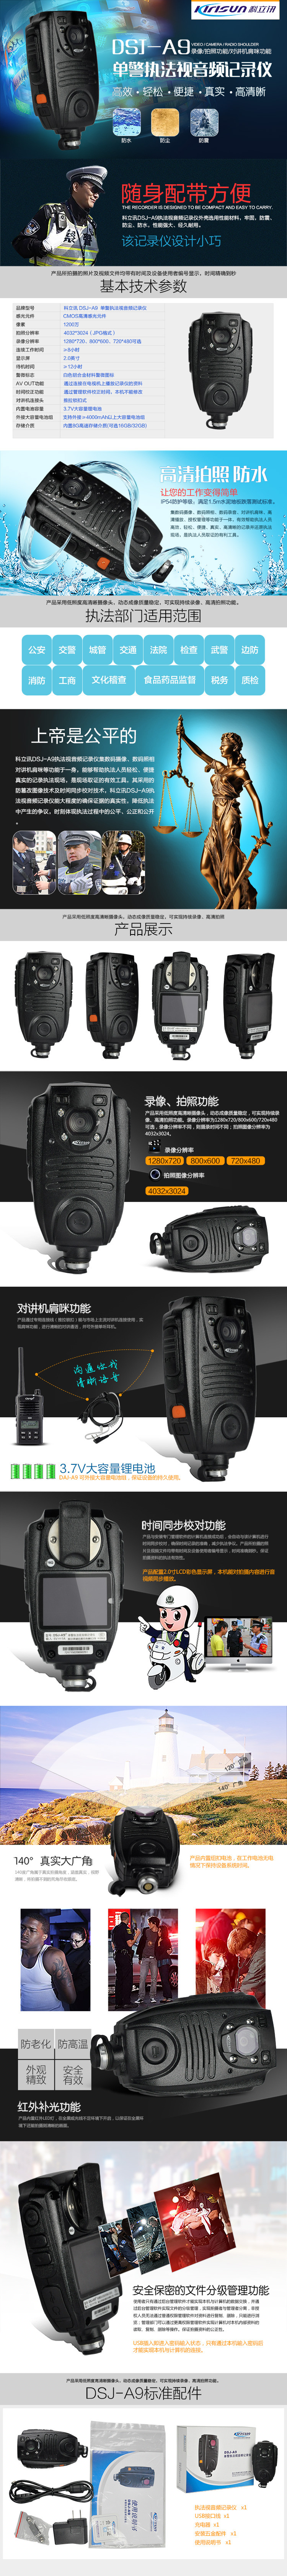 科立讯(KIRISUN) DSJ-A9S 单警执法视音记录仪 高清